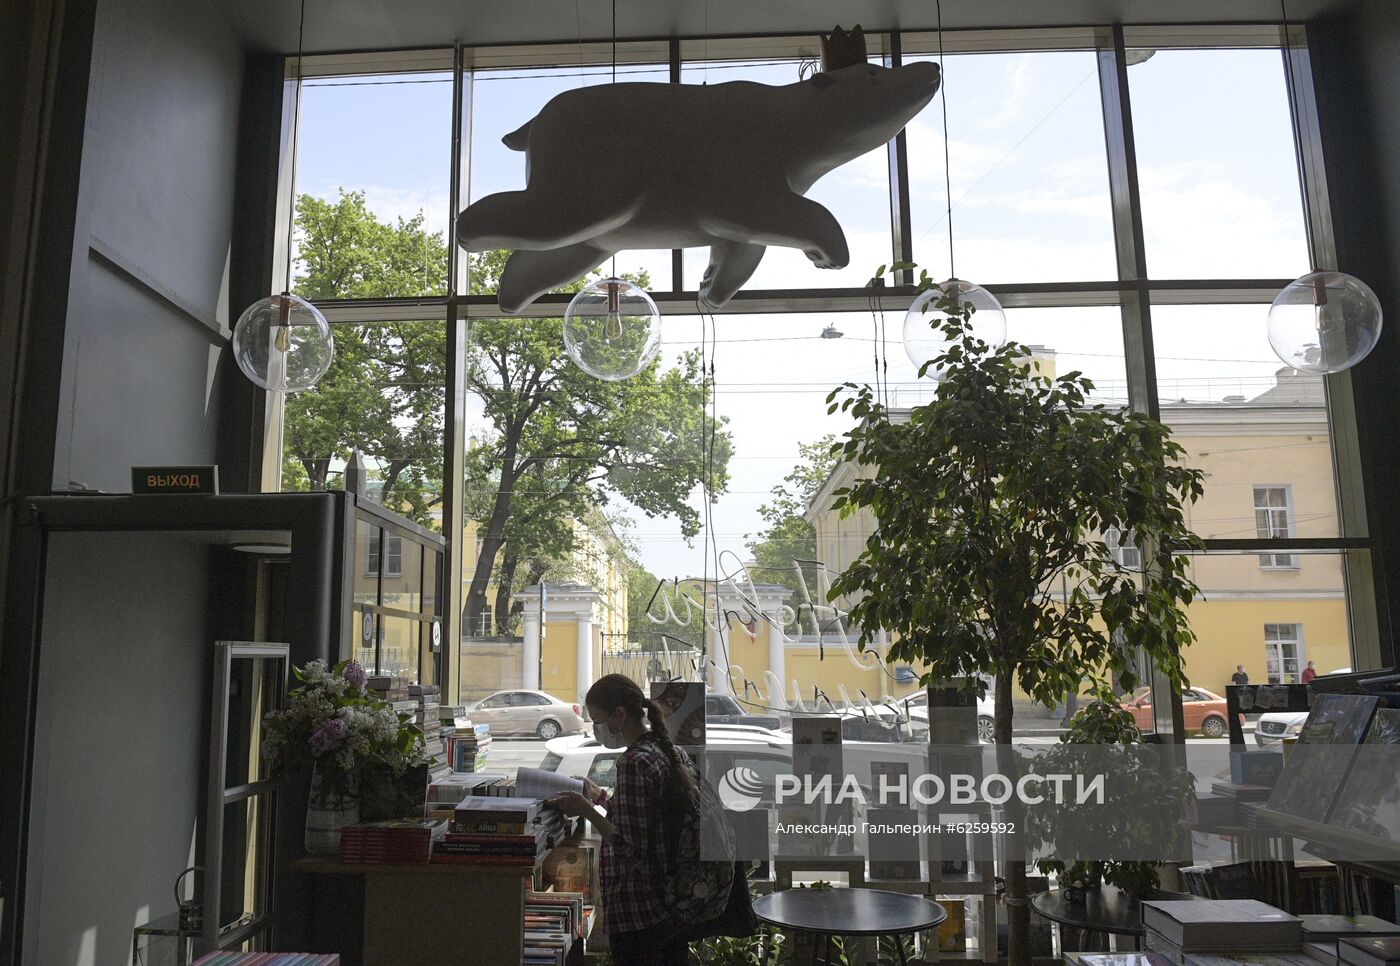 Открытие непродовольственных магазинов в Санкт-Петербурге